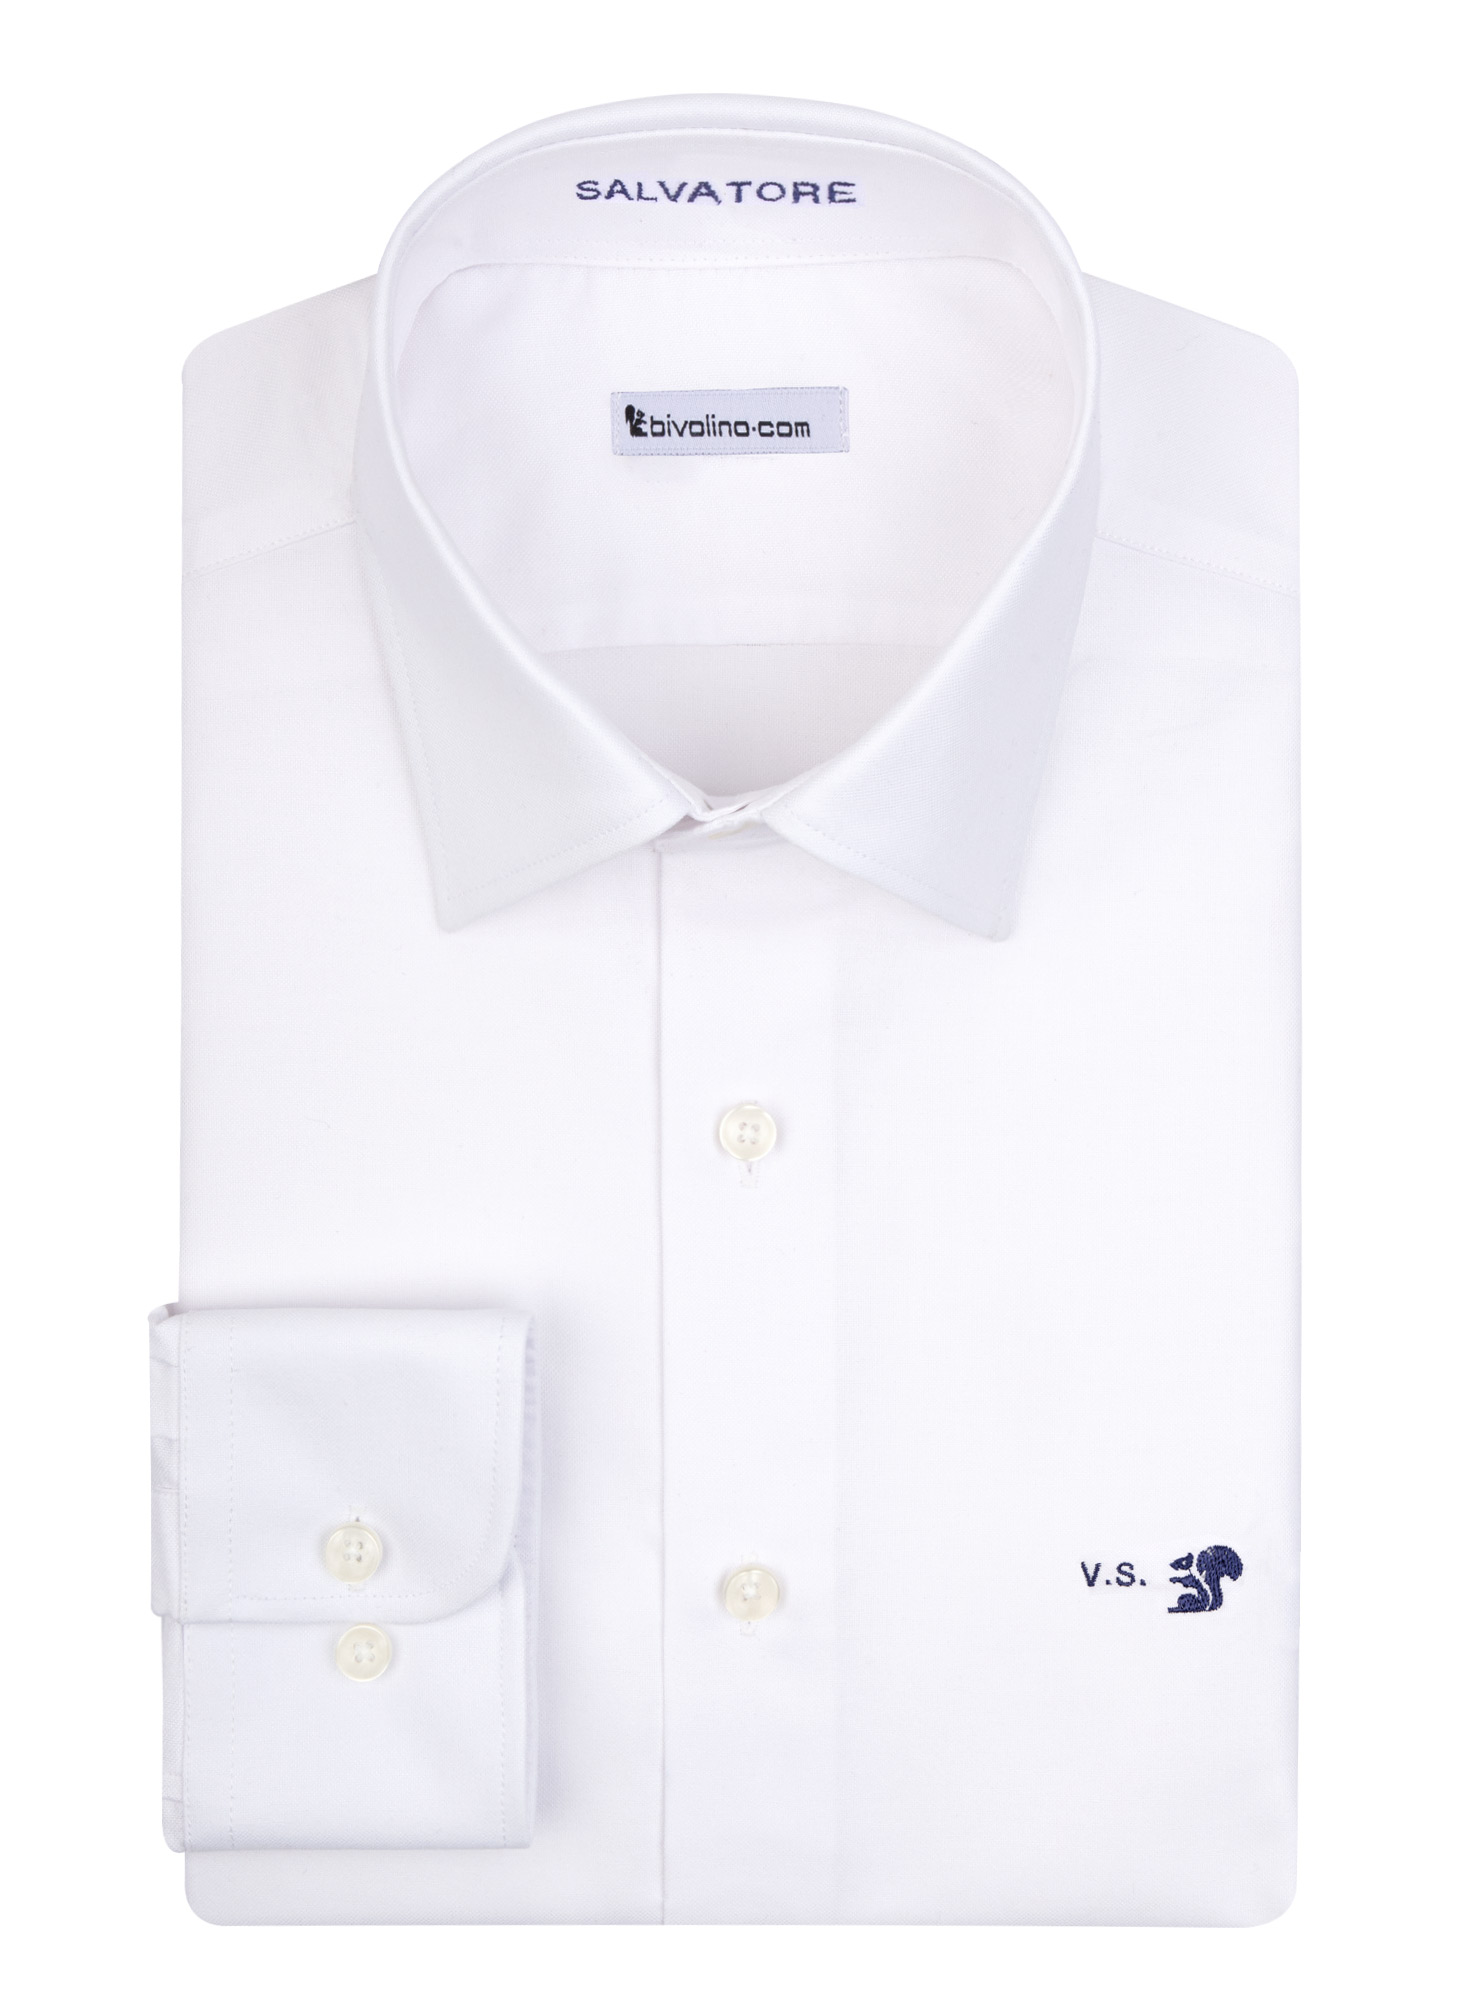 VICENZA - Cuna Pinpoint blanca camisa de hombre - GADA 1